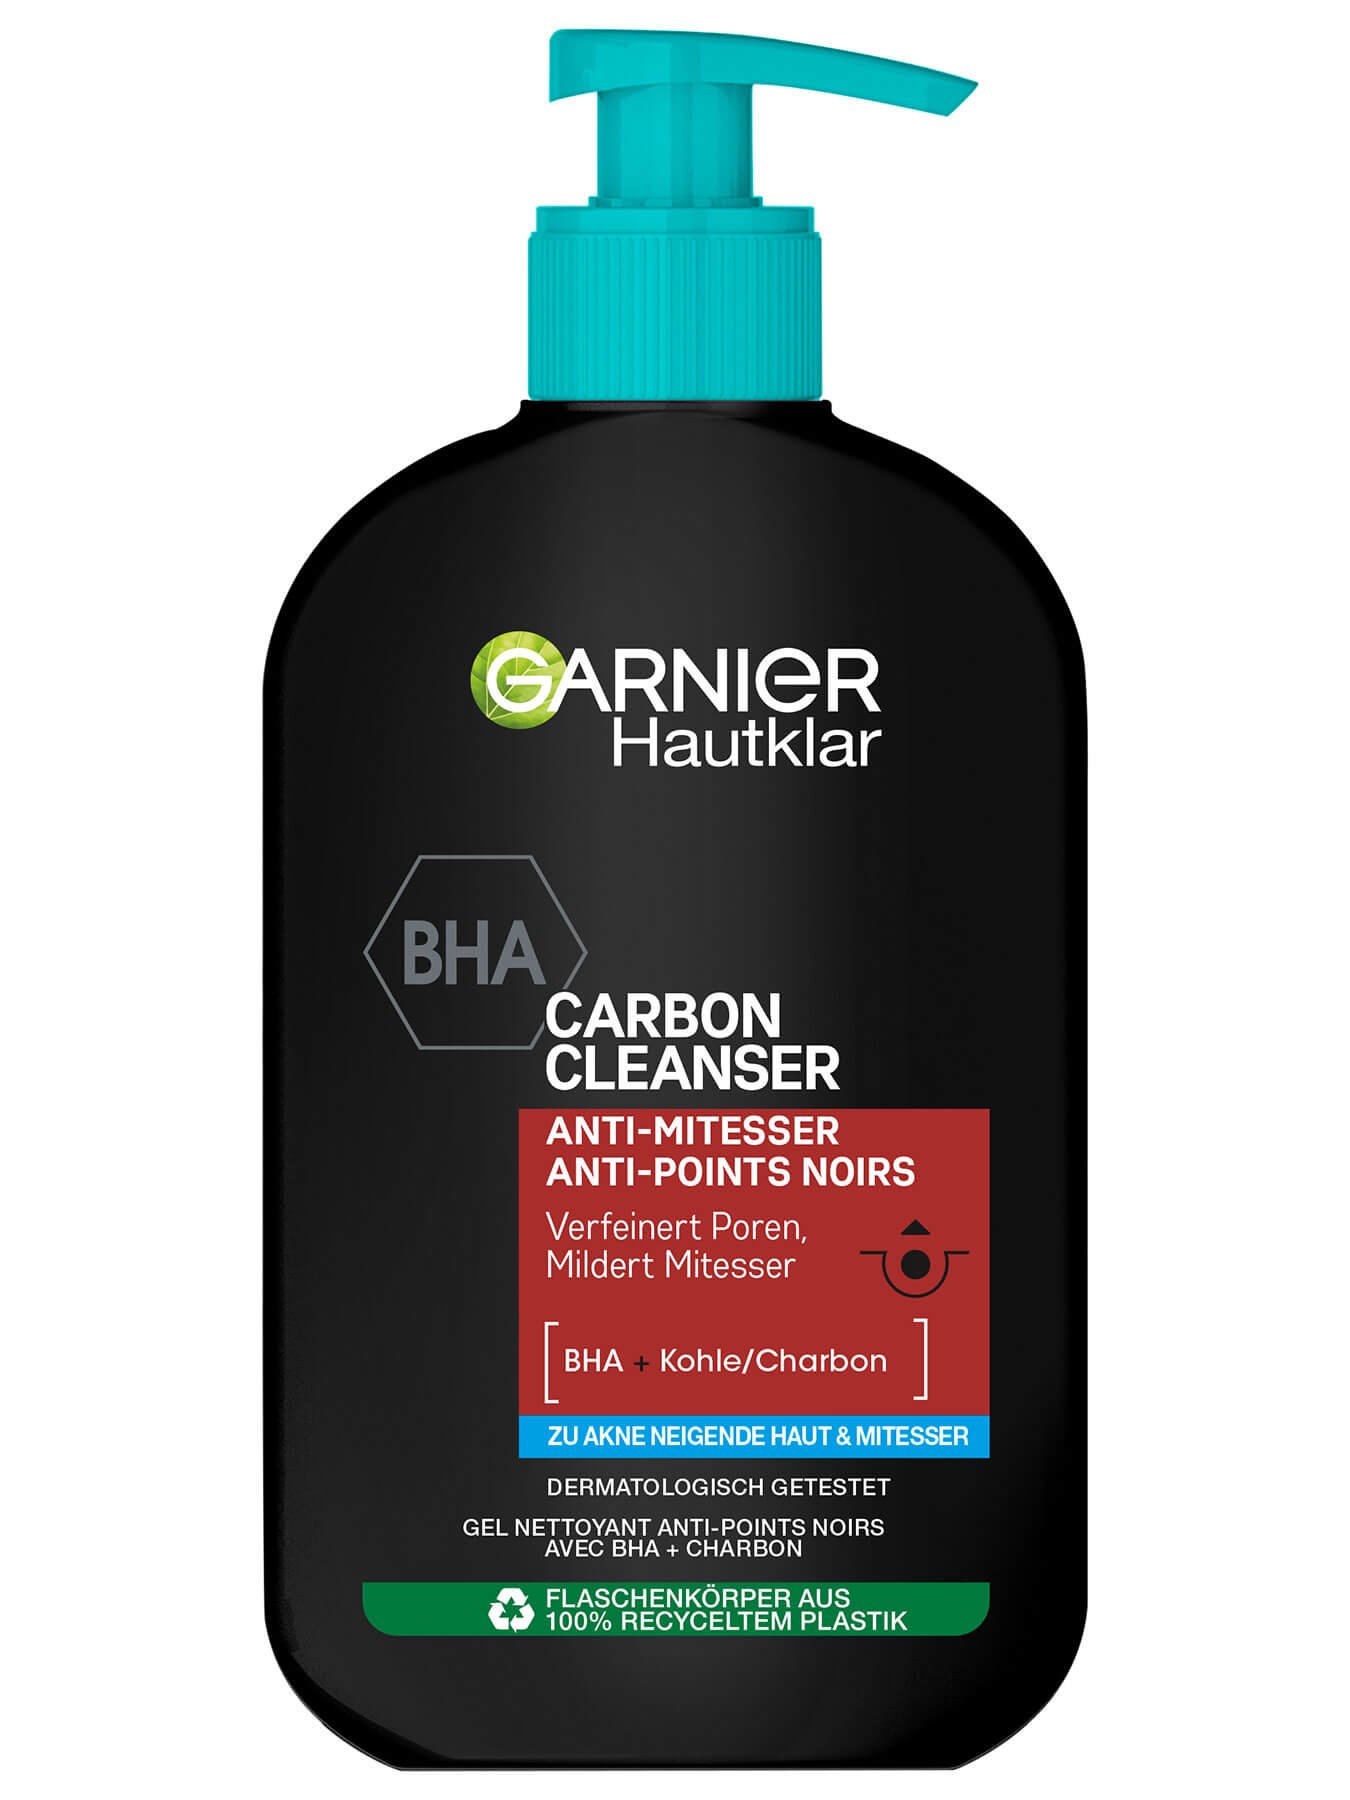 Hautklar Waschgel BHA Carbon Cleanser Anti-Mitesser Produktbild